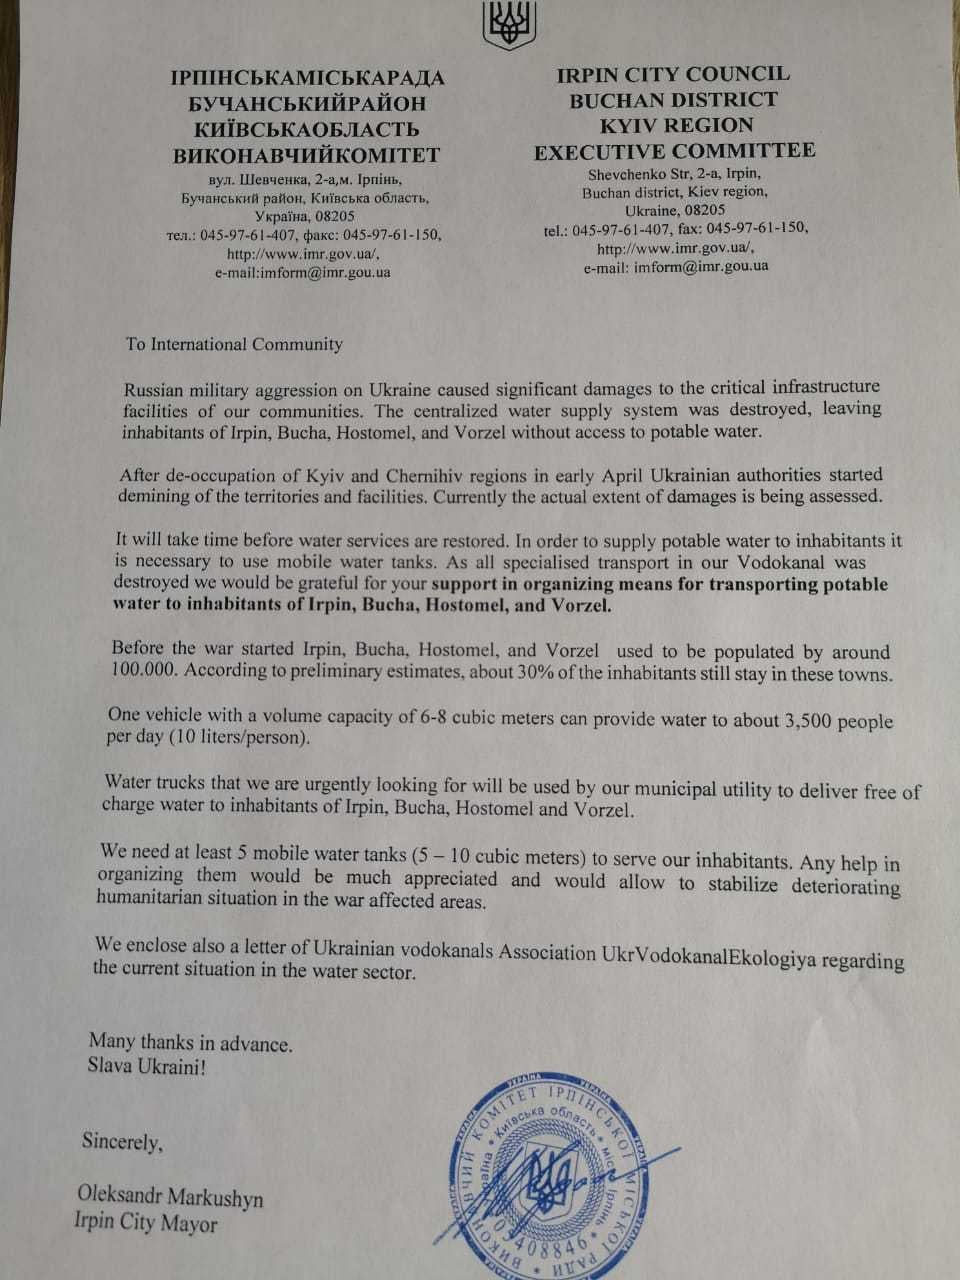 Oficjalne pismo o zbiórce funfuszy na cysternę do transportu wody pitnej